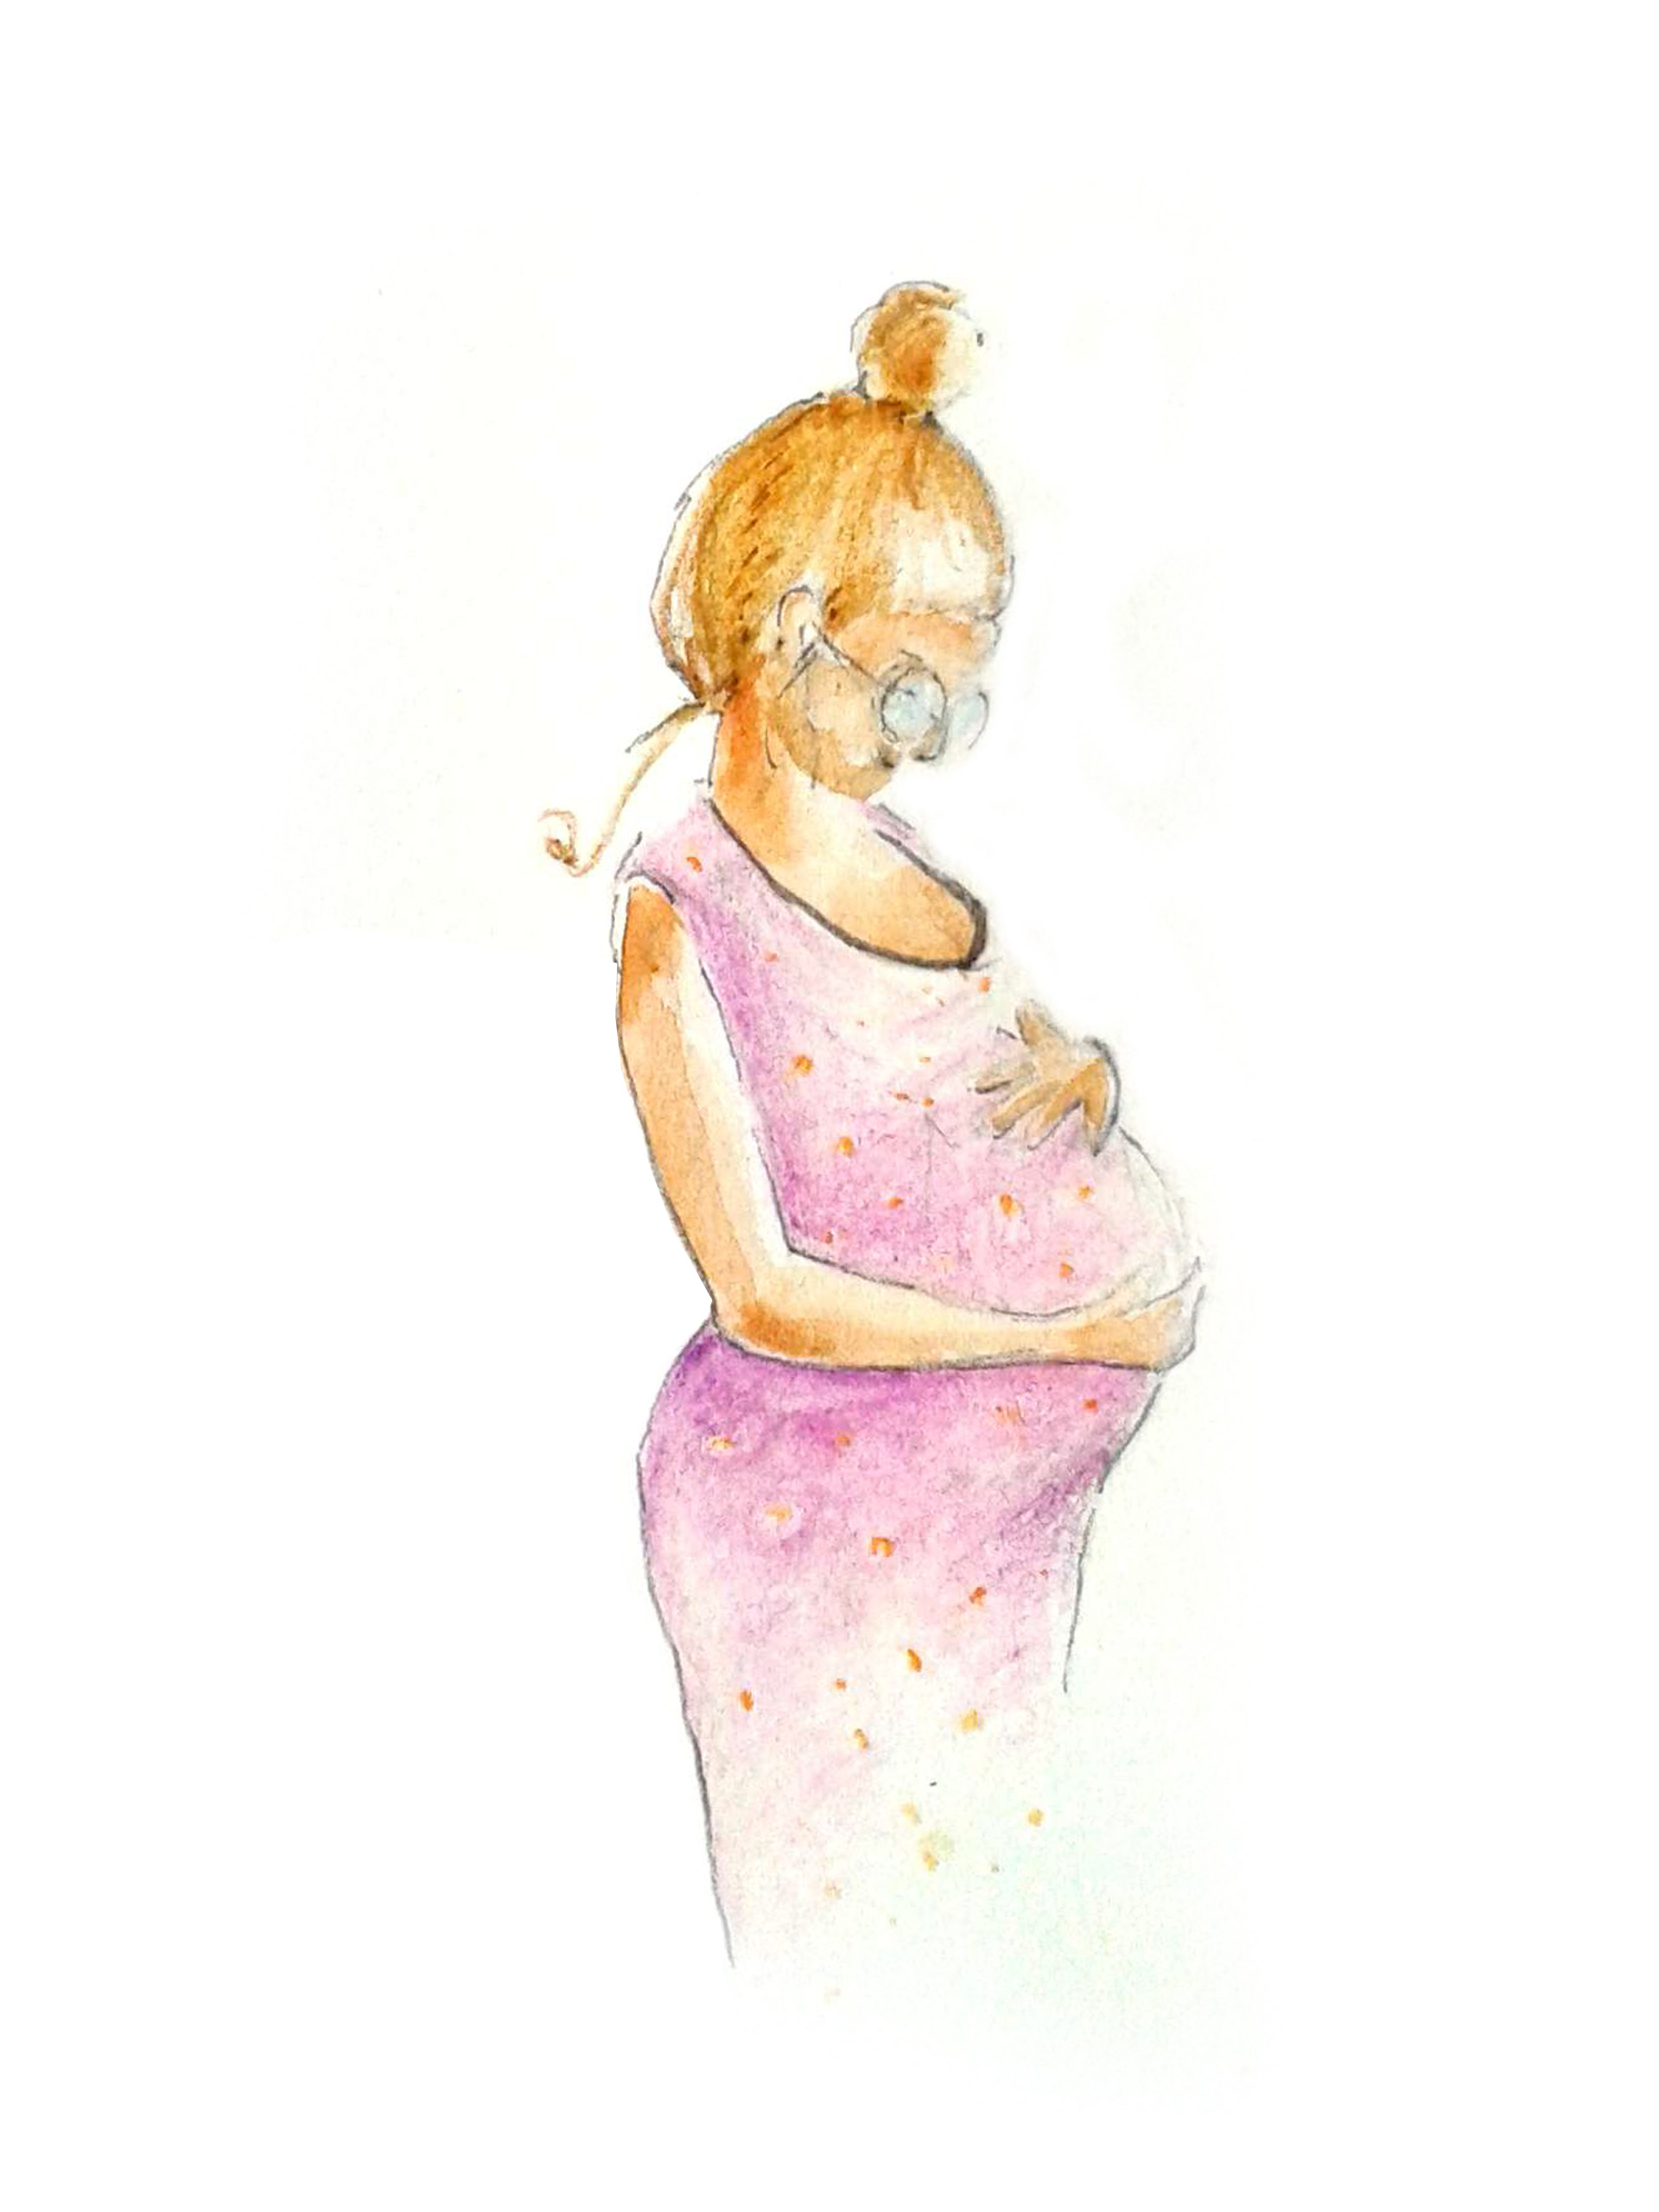 Femmes enceintes face à une grosse non désirée